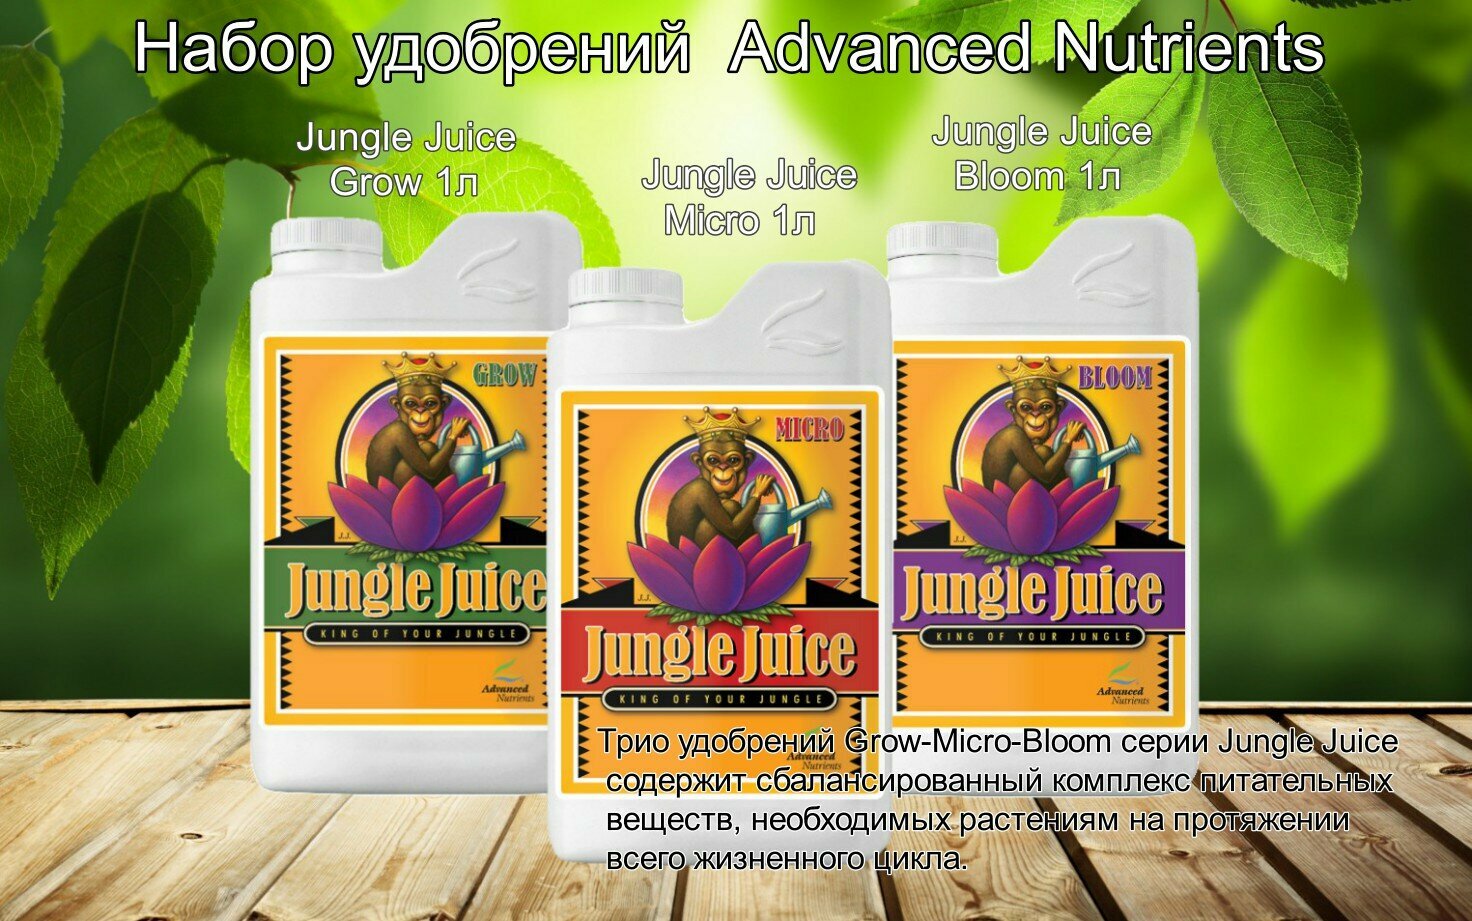 Набор Удобрений Advanced Nutrients Jungle Juice Bloom + Grow + Micro на весь жизненный цикл растений